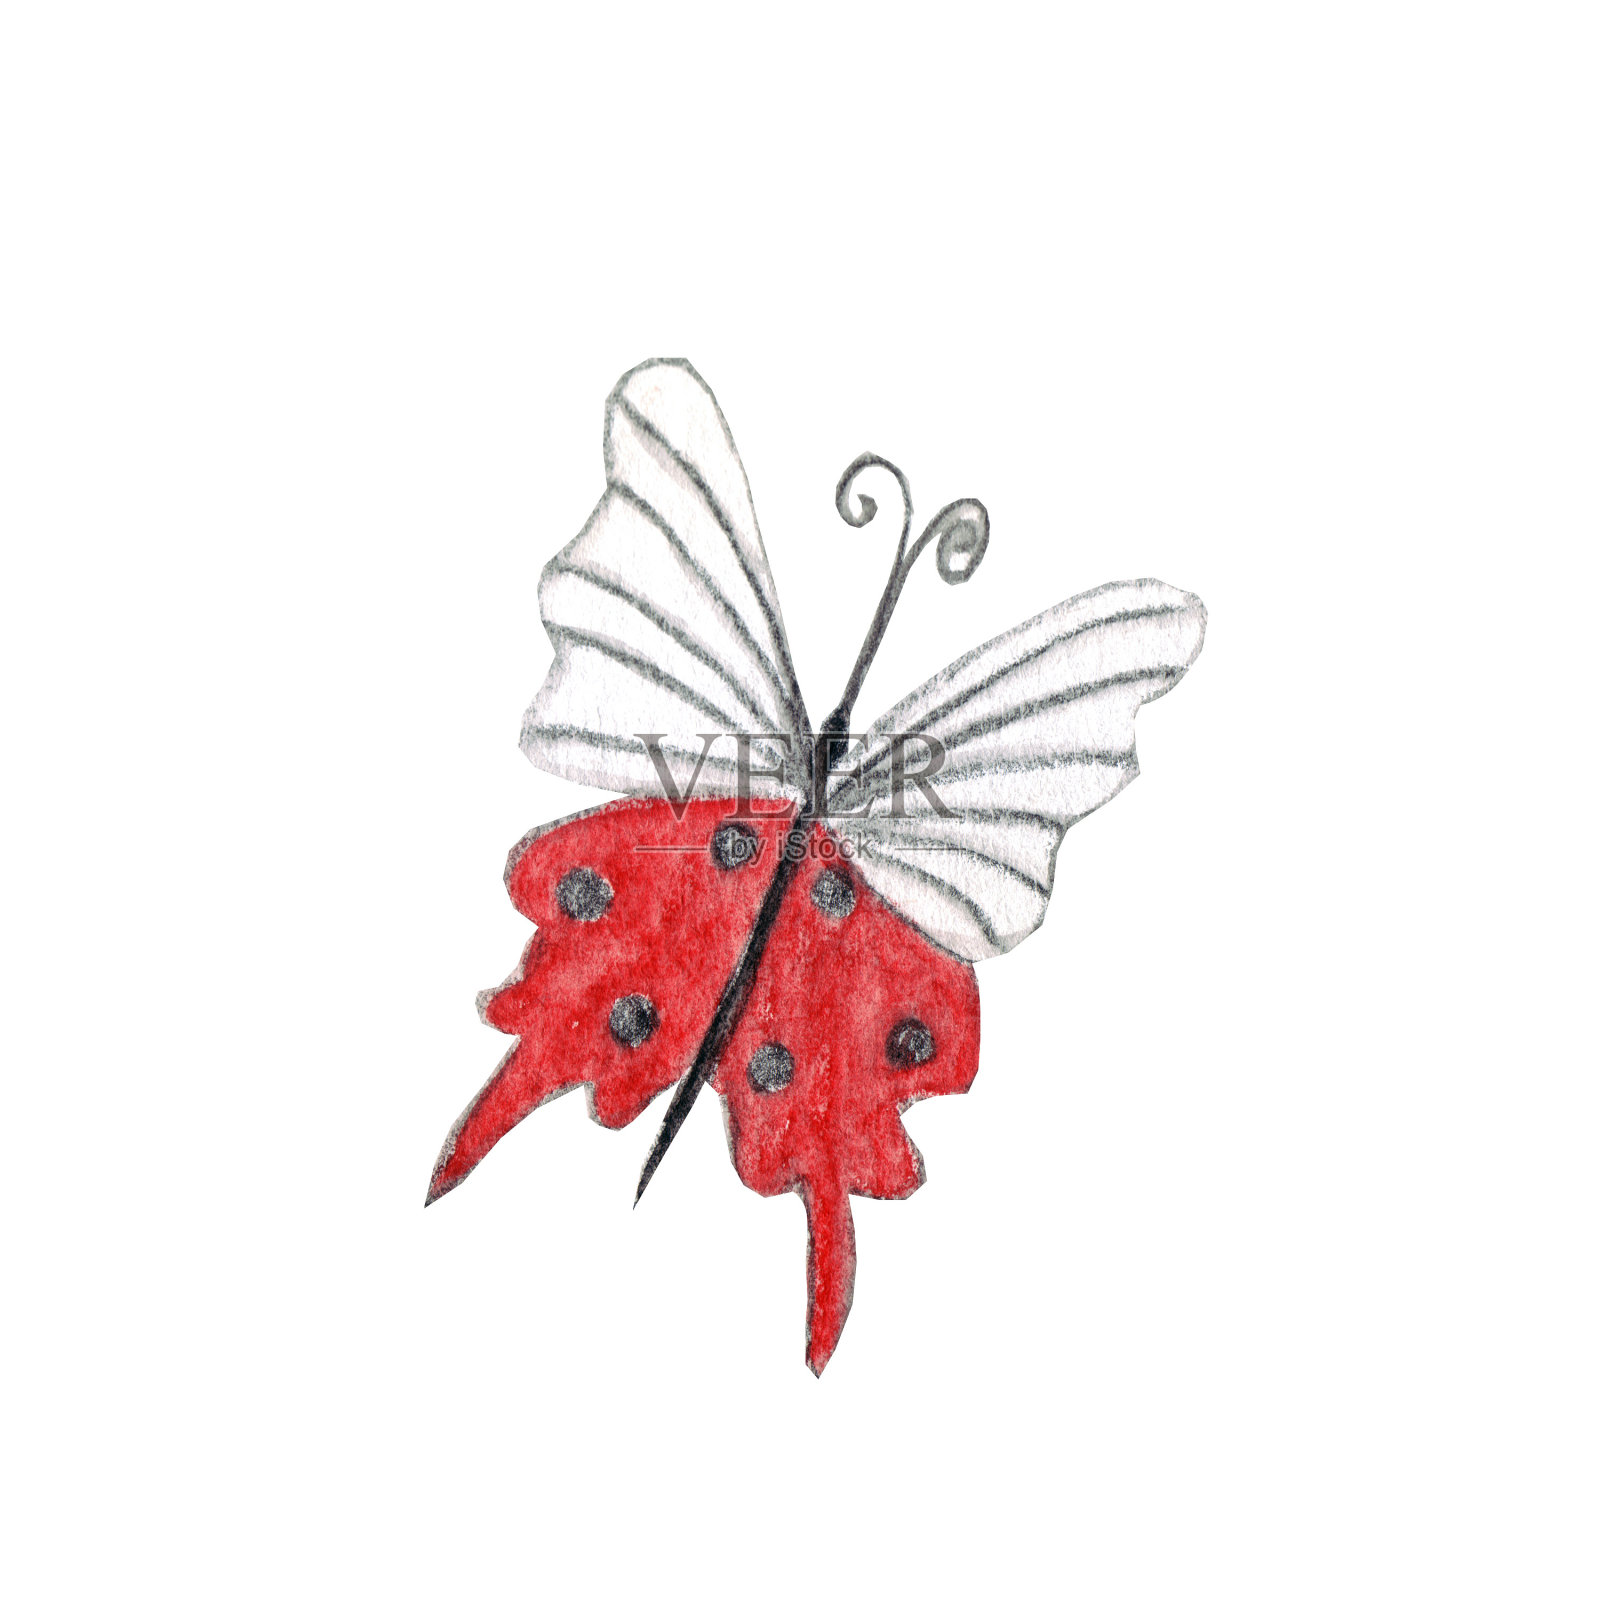 一只小小的神秘蝴蝶——象征着觉醒、春天、爱情。插画图片素材